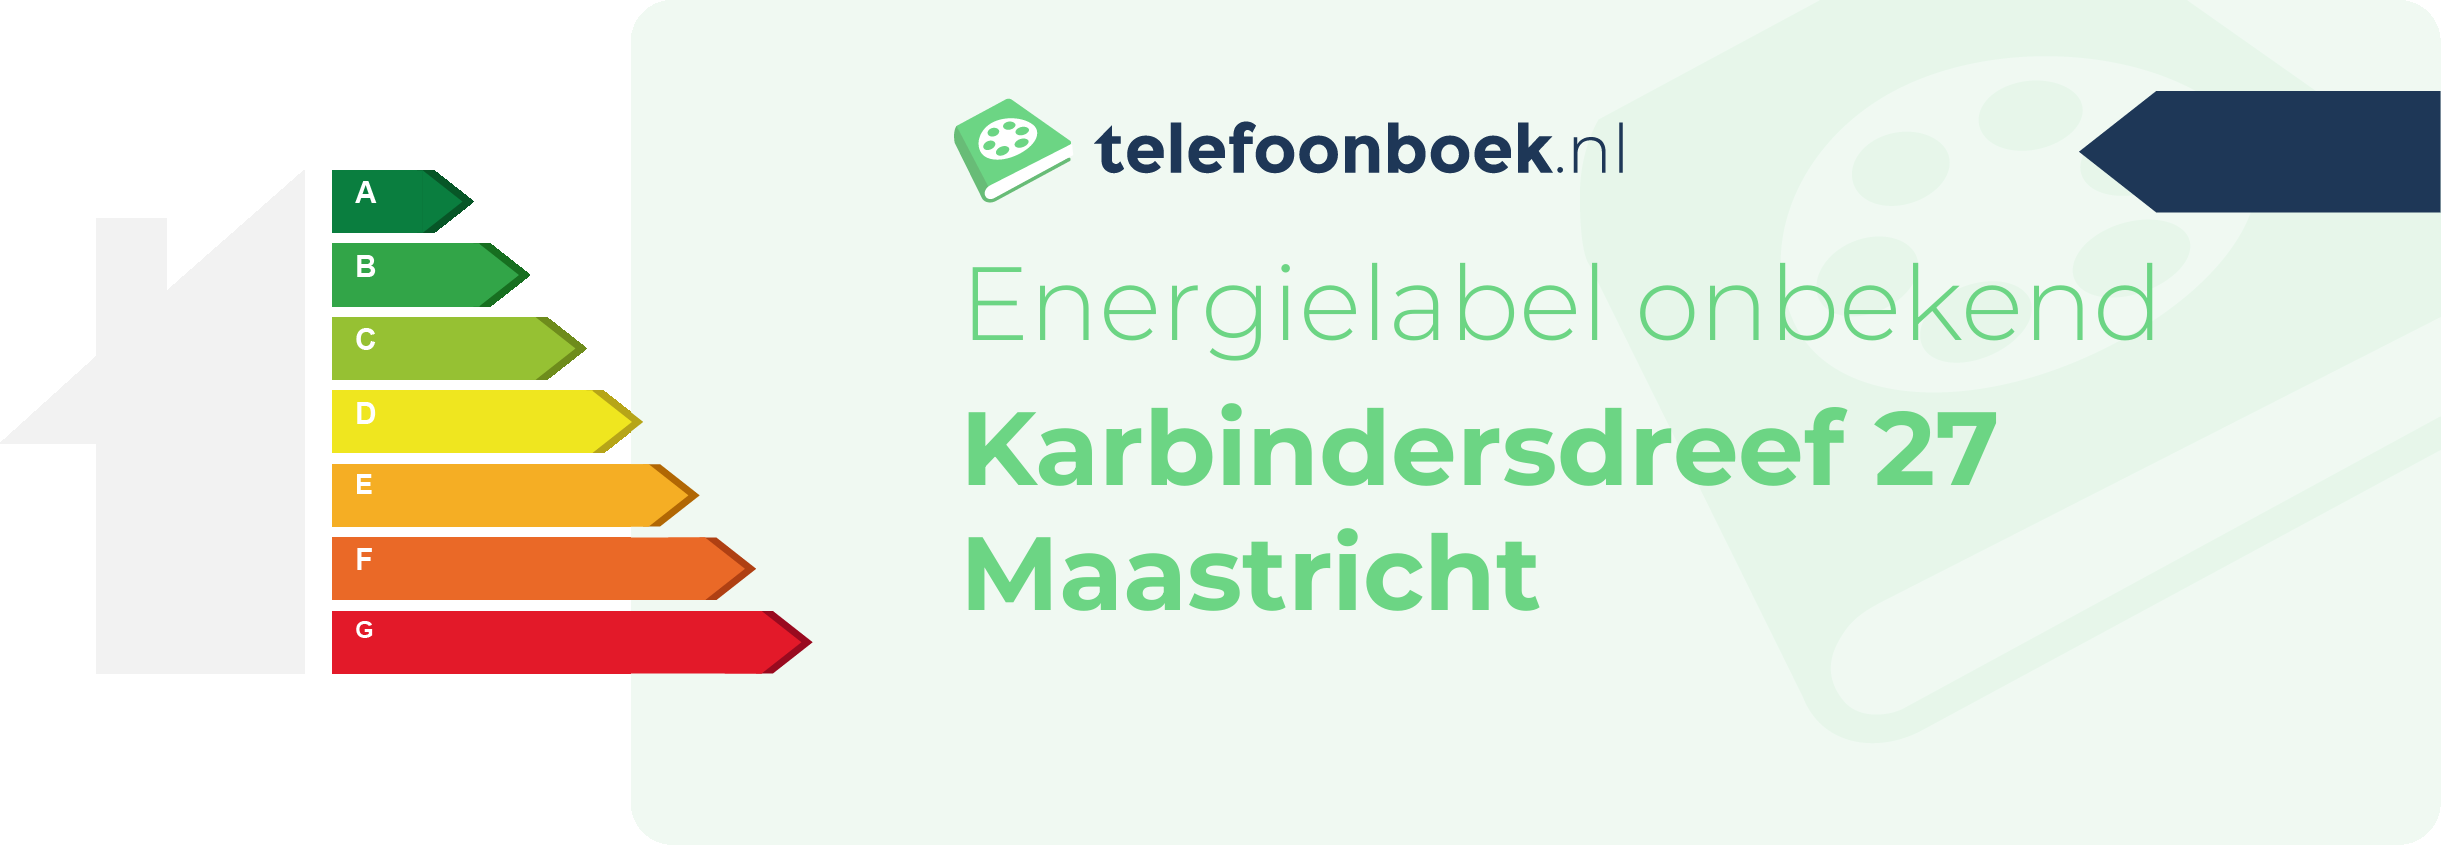 Energielabel Karbindersdreef 27 Maastricht